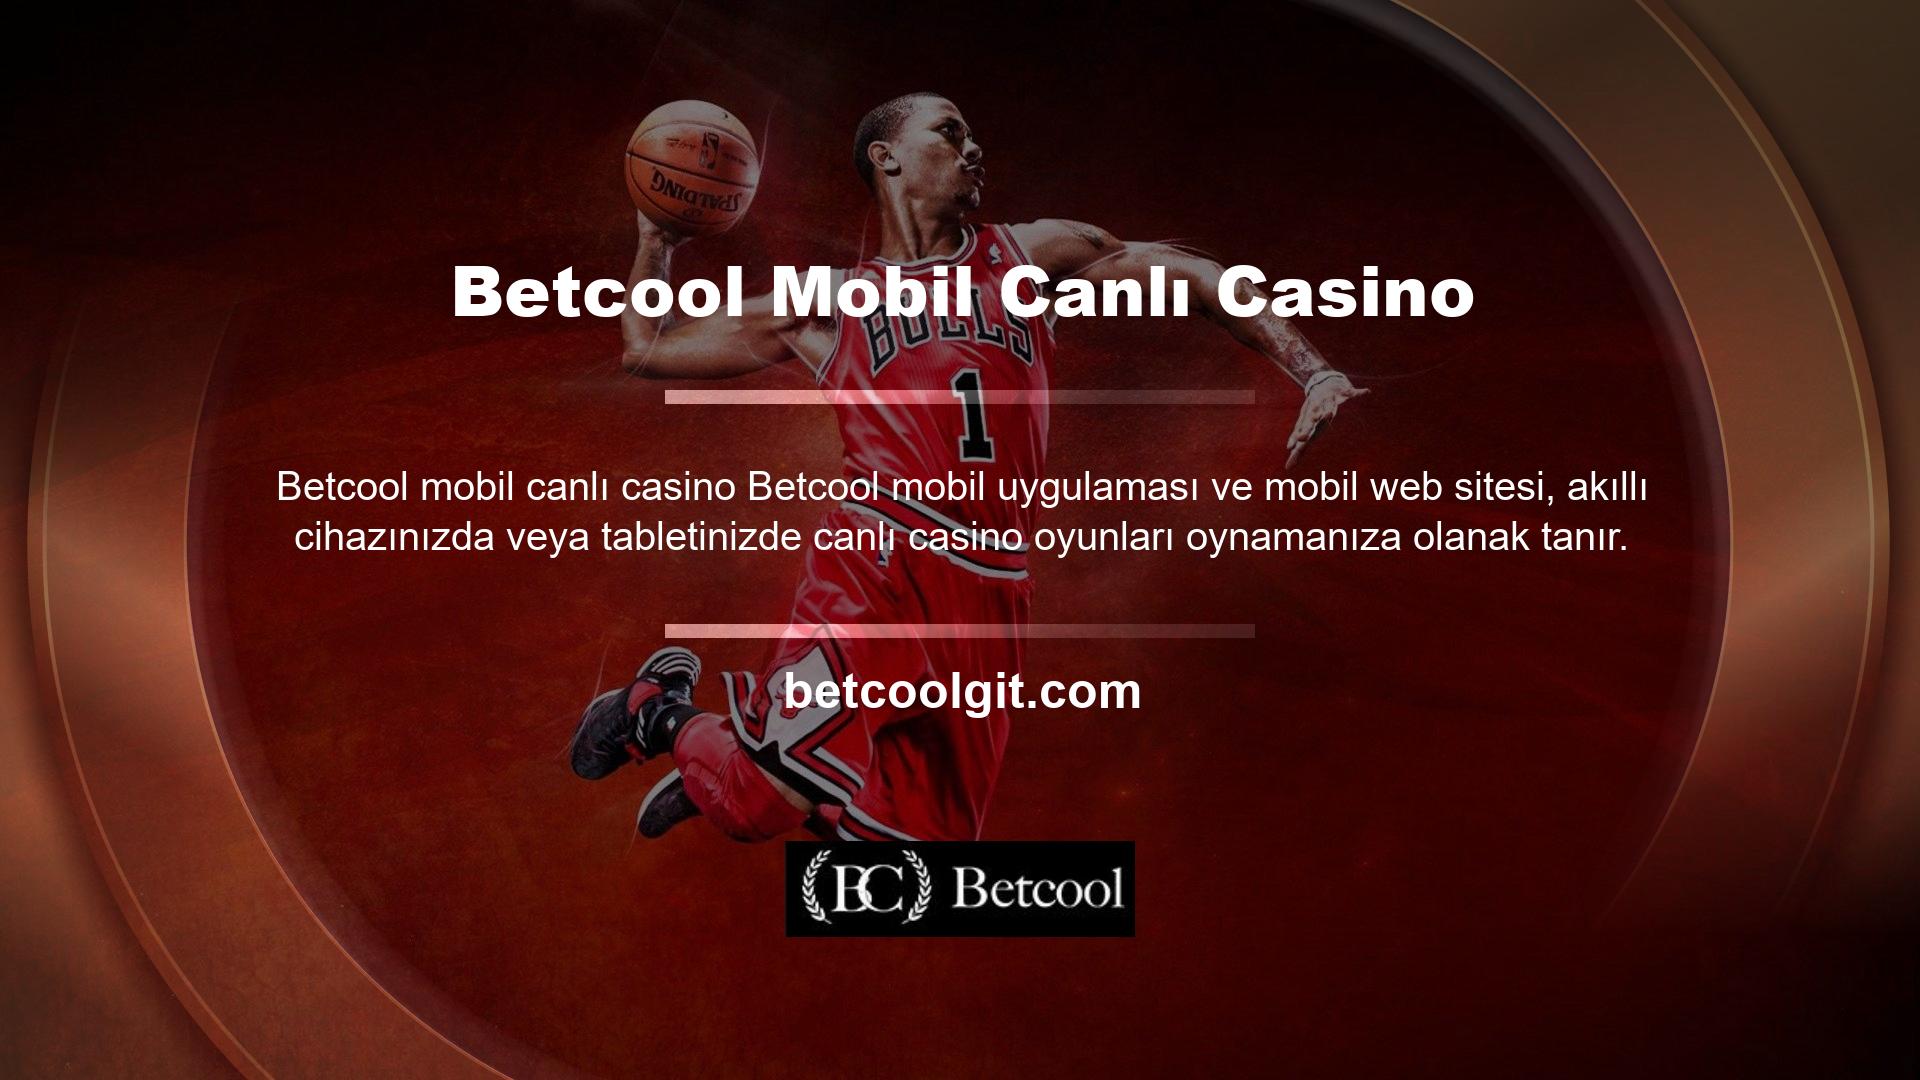 Betcool online oyun sitesi mobil oyun hizmetleri sunmaktadır